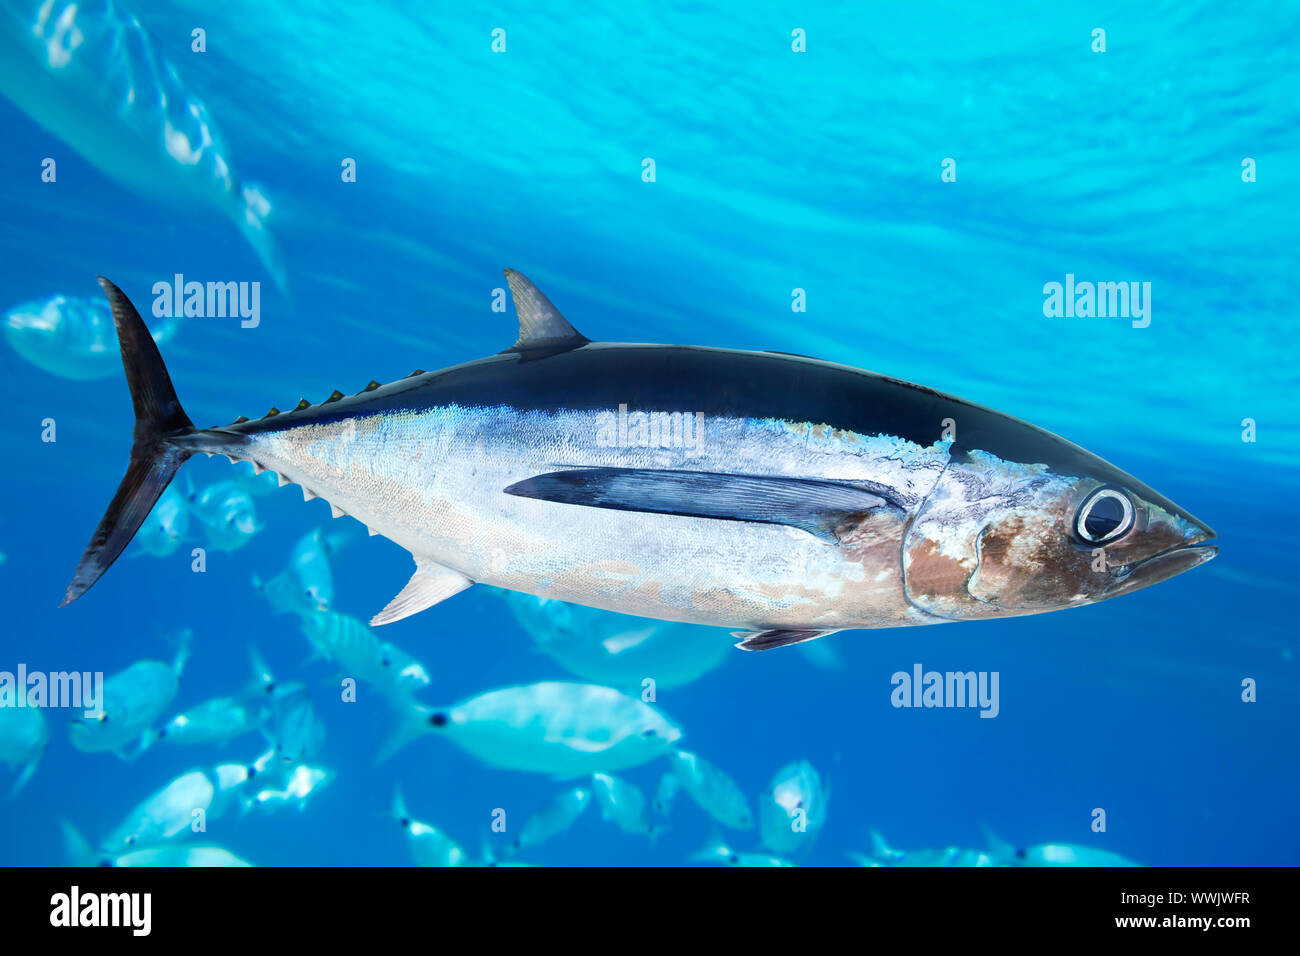 Tonno albacore immagini e fotografie stock ad alta risoluzione - Alamy